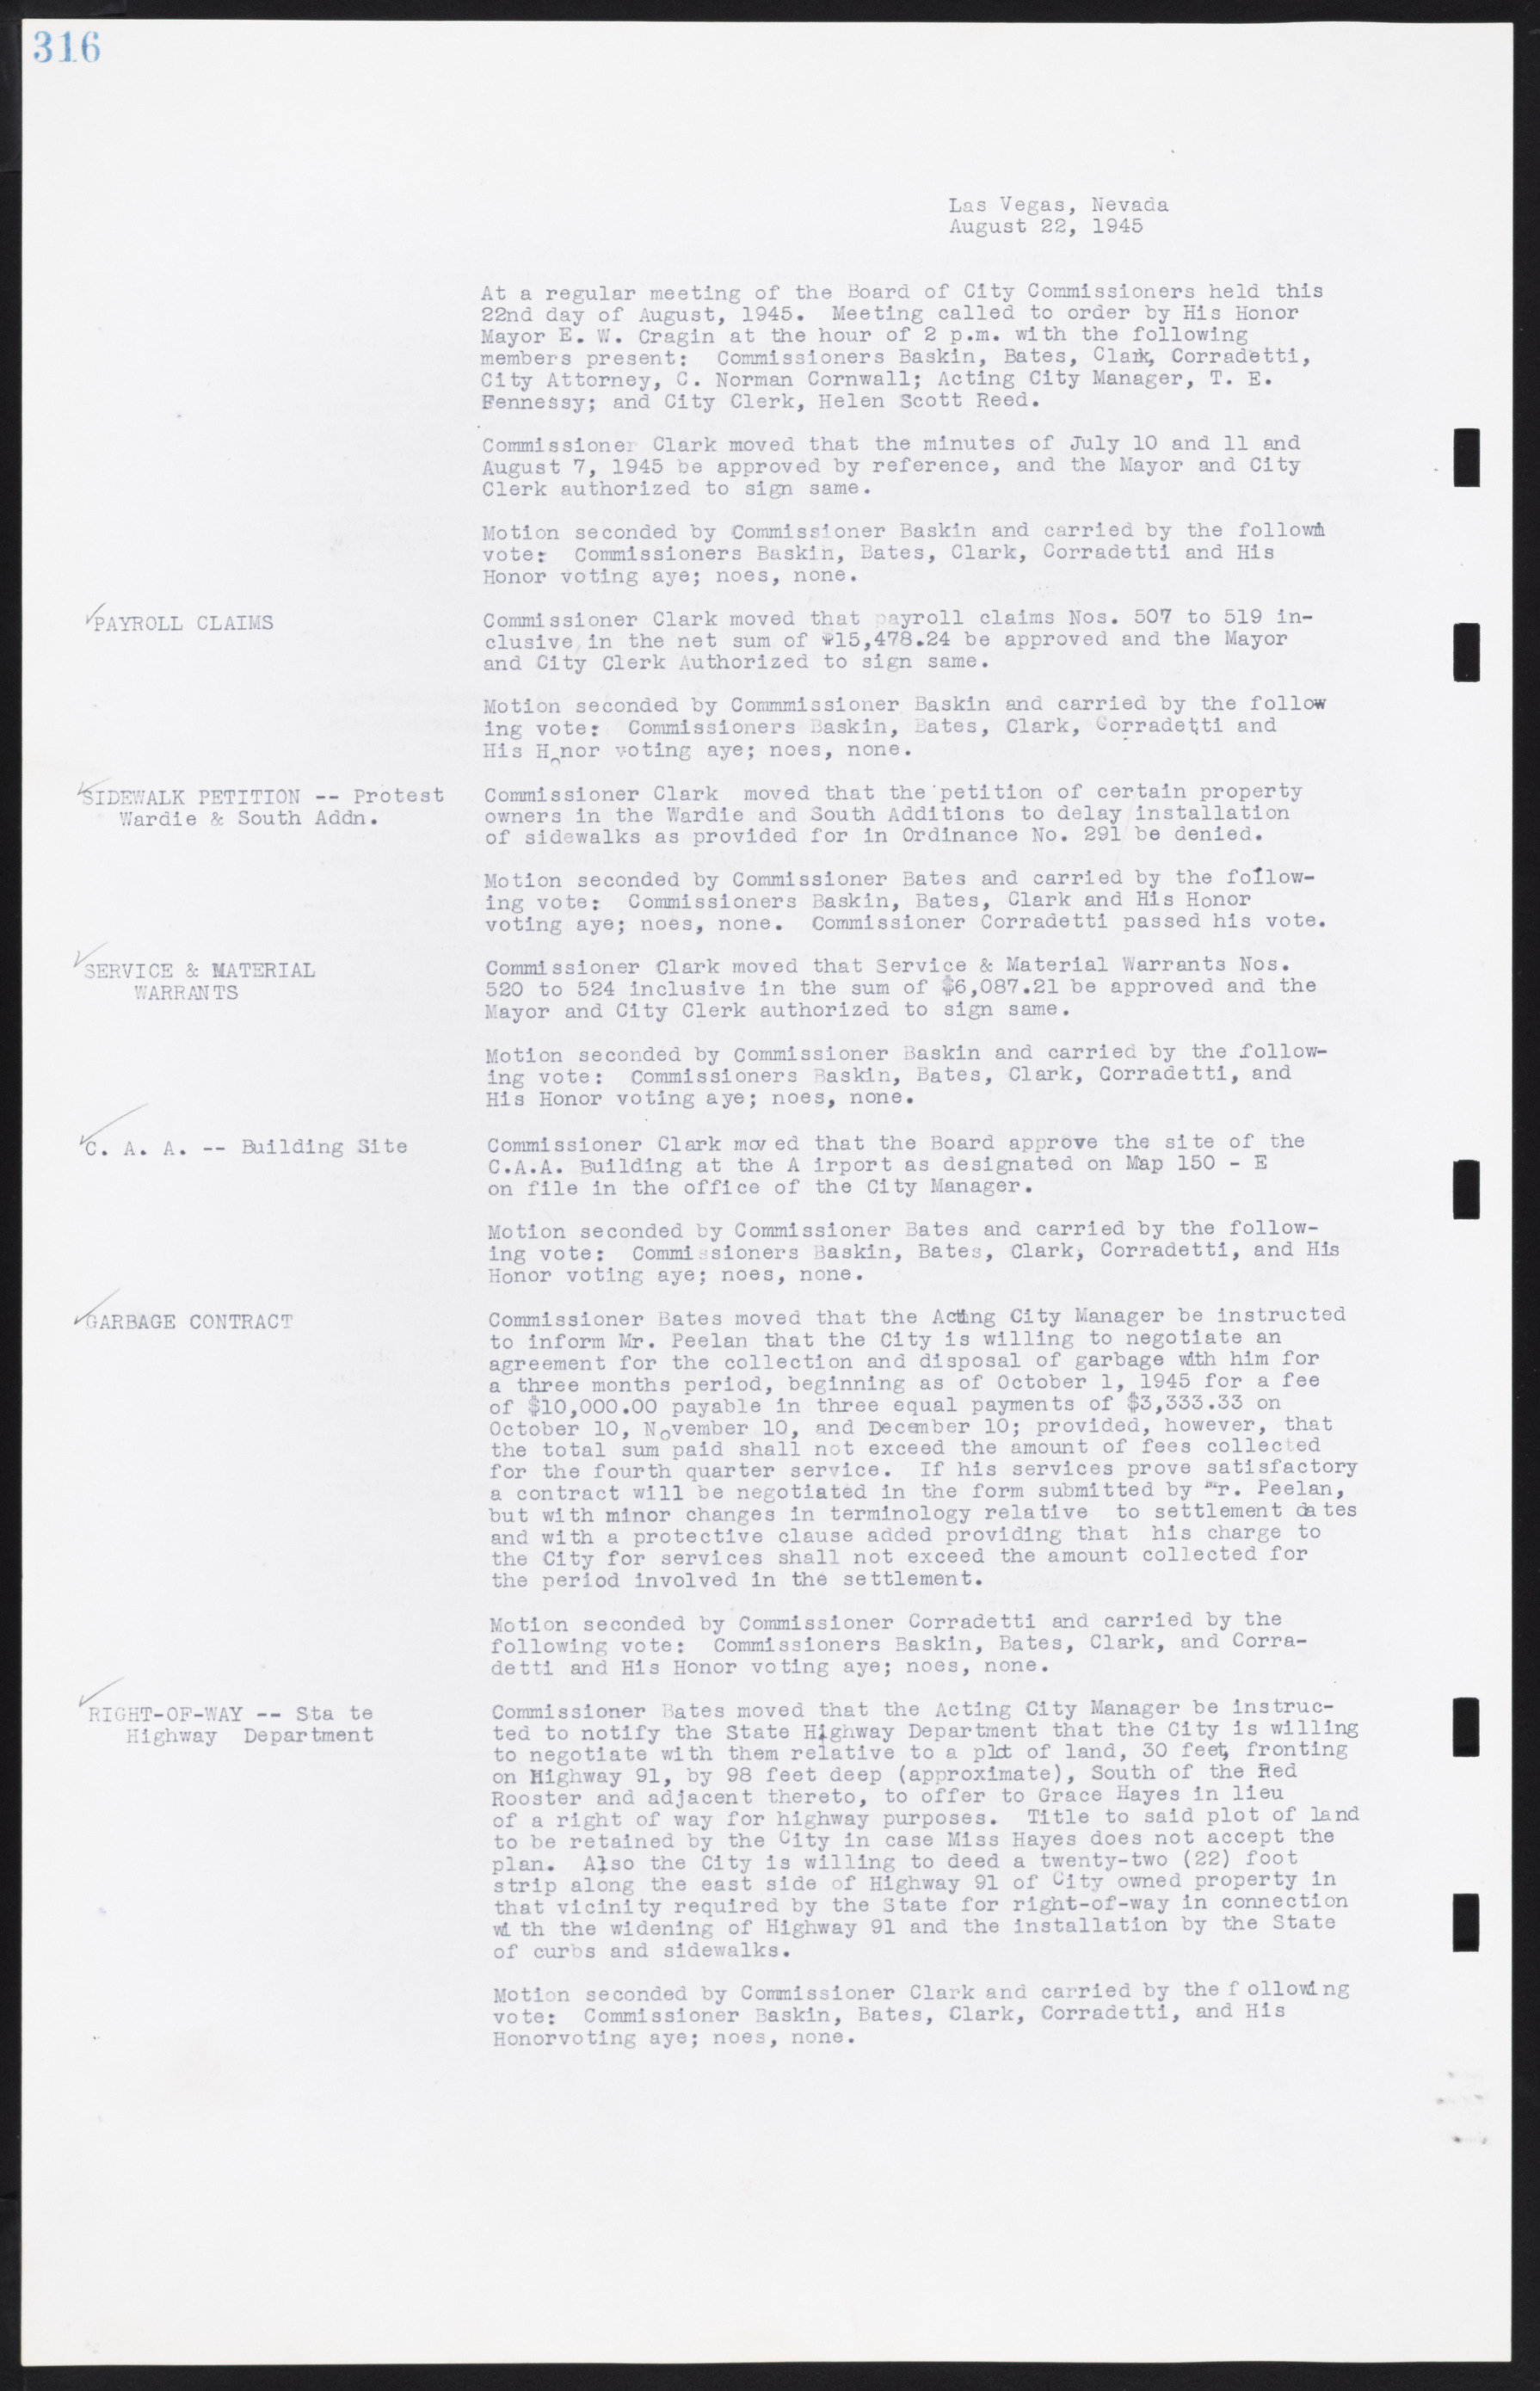 Las Vegas City Commission Minutes, August 11, 1942 to December 30, 1946, lvc000005-340